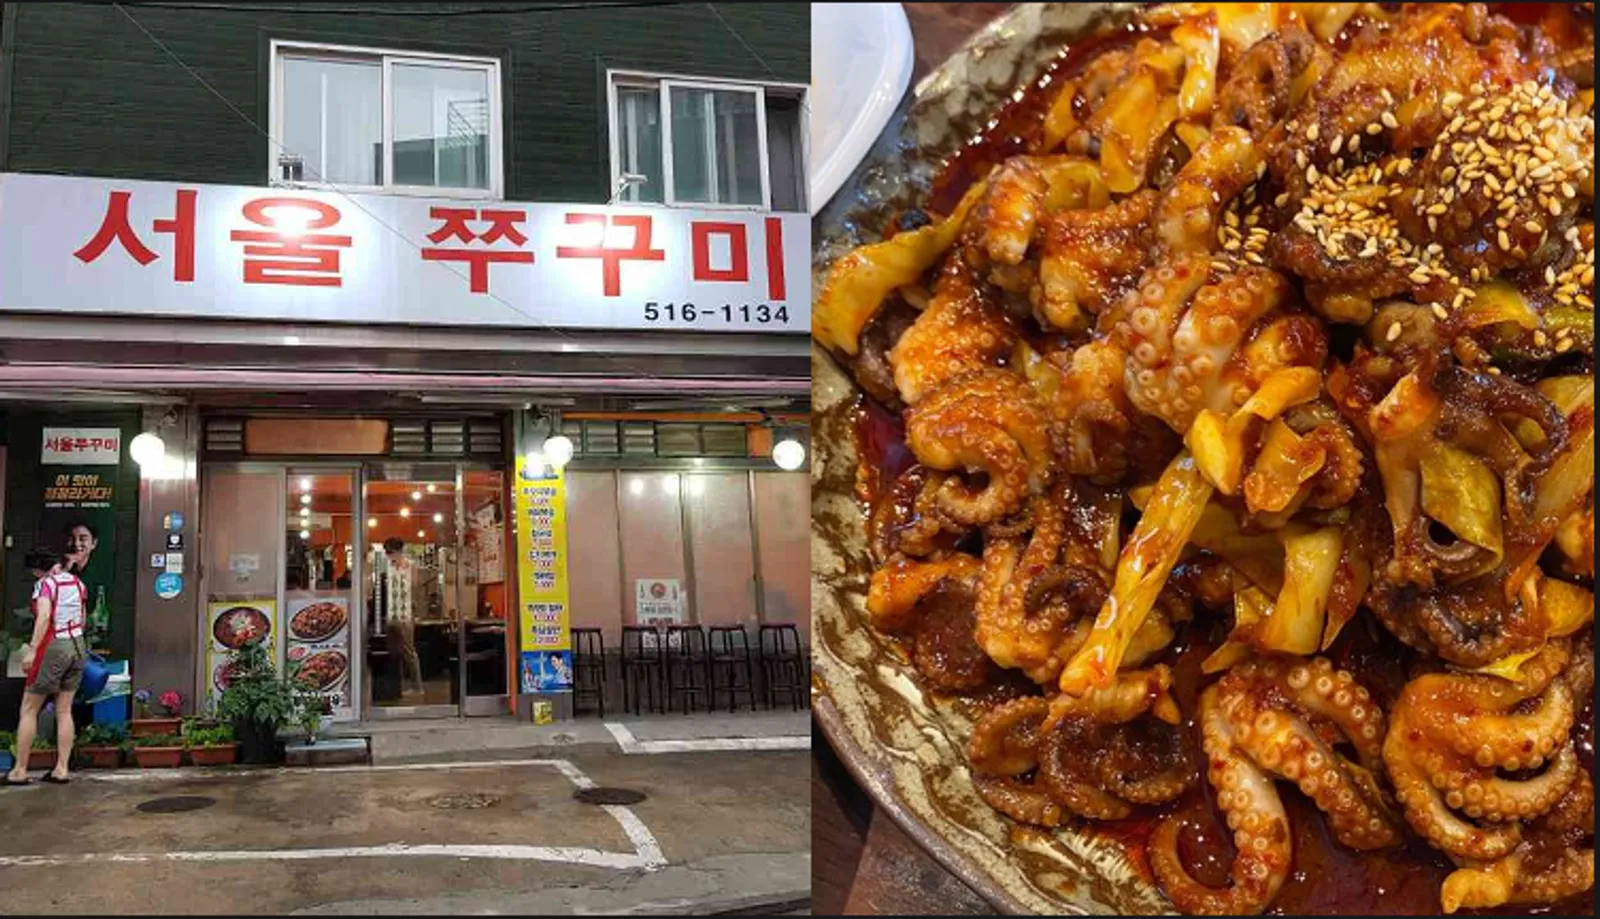 7 Rekomendasi Restoran di Korea dari Artis Mukbangers: Siap Mukbang?